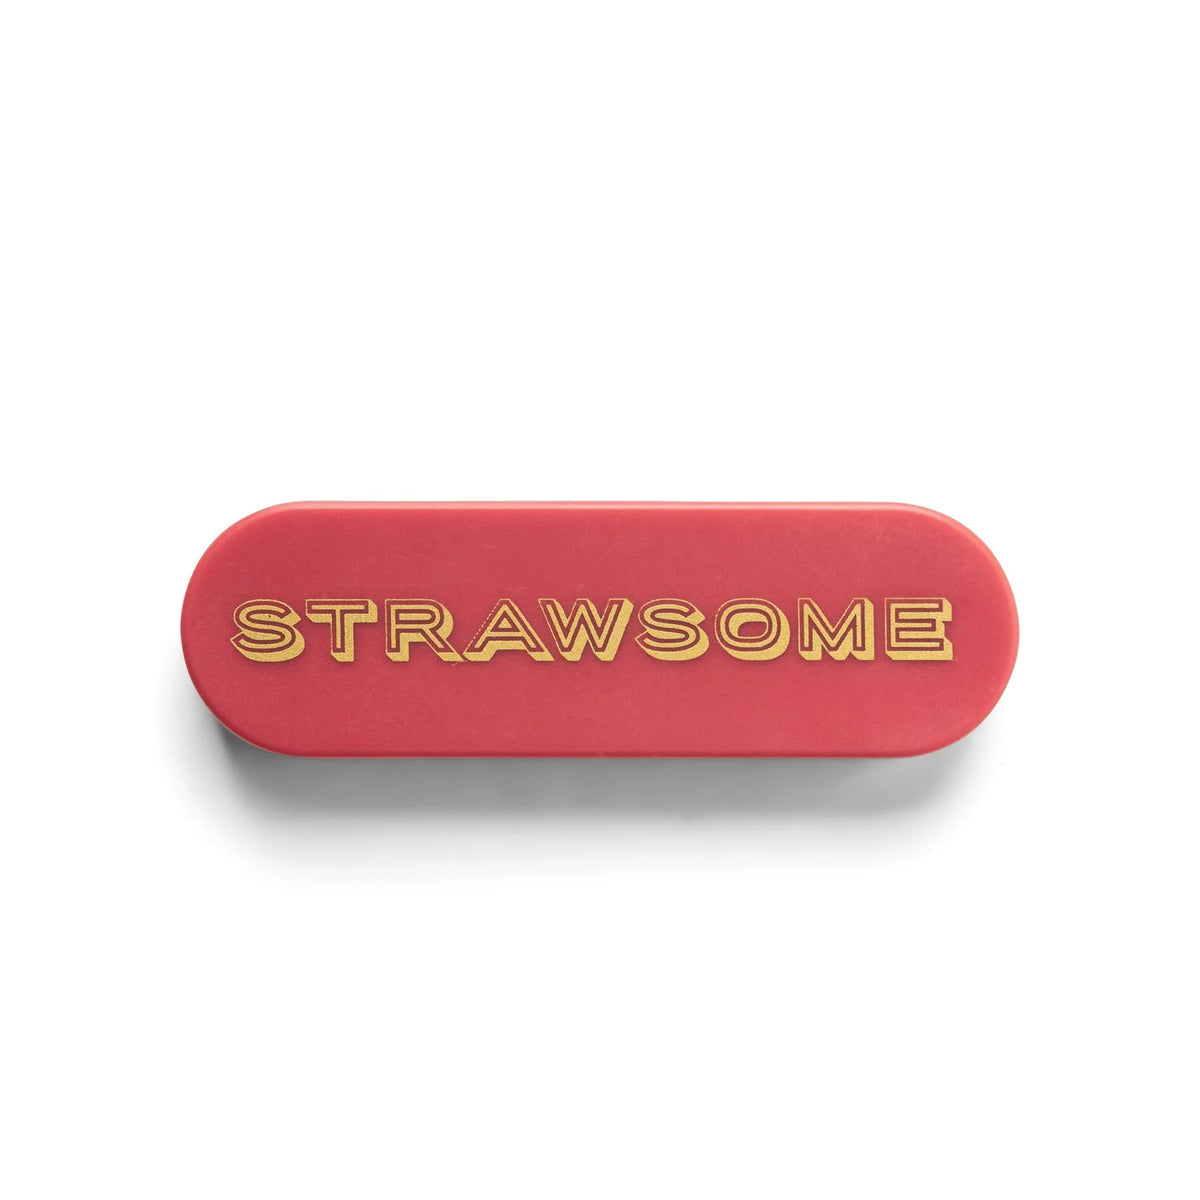 Coral Strawsome Portable Straw